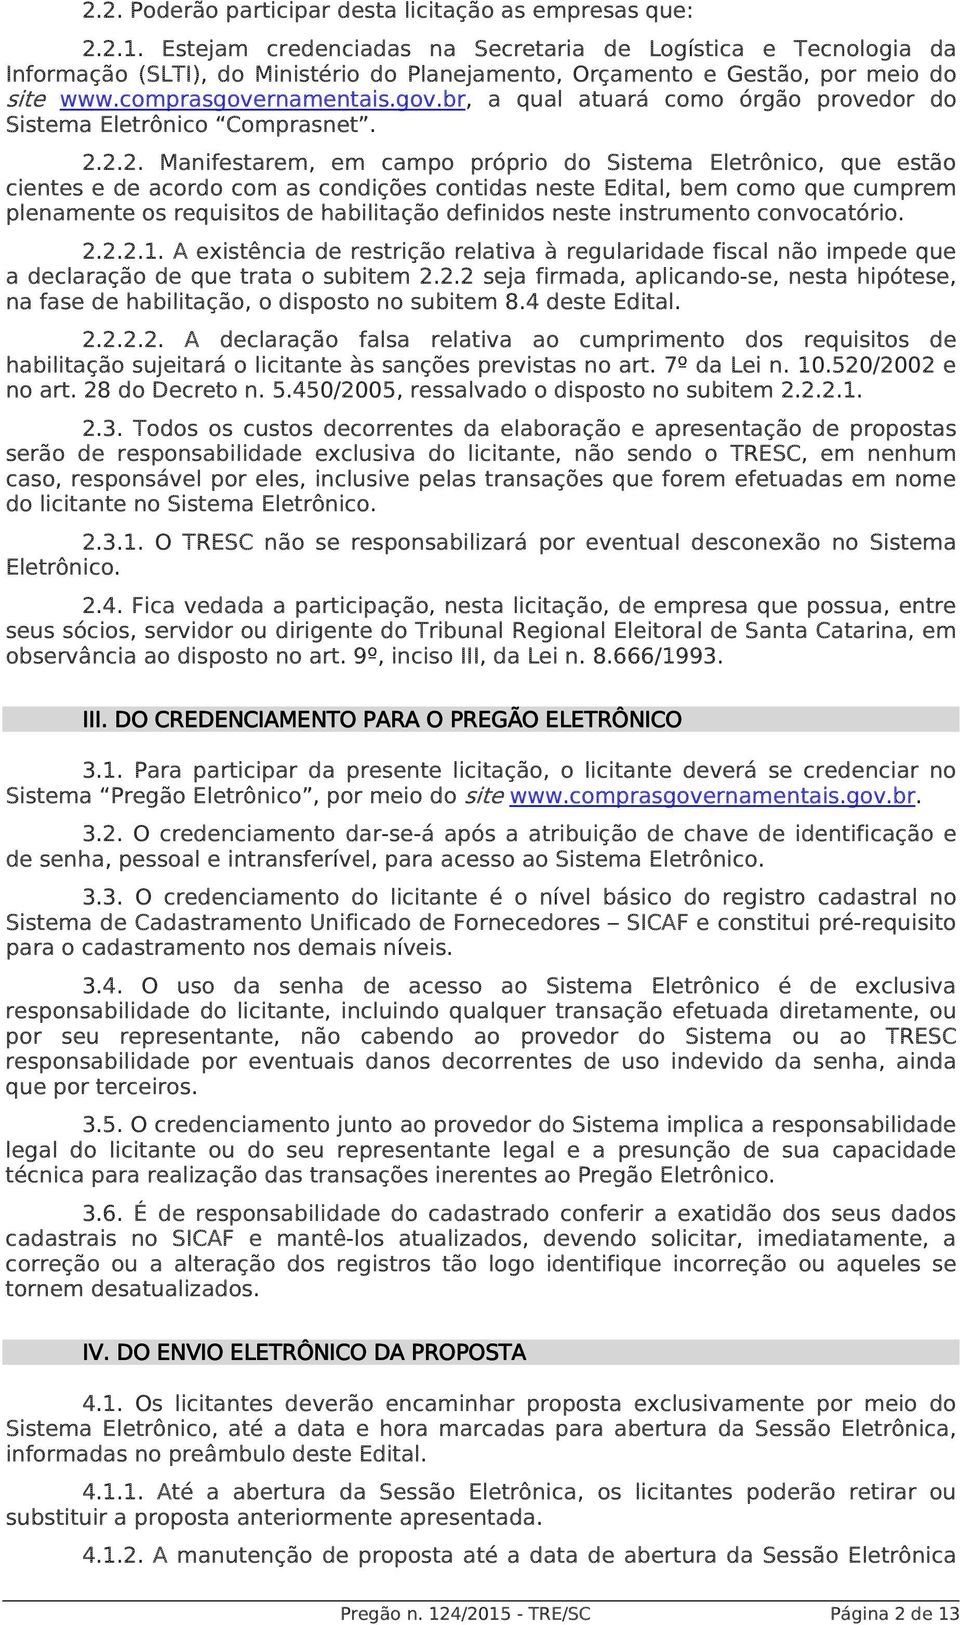 rnamentais.gov.br, a qual atuará como órgão provedor do Sistema Eletrônico Comprasnet. 2.